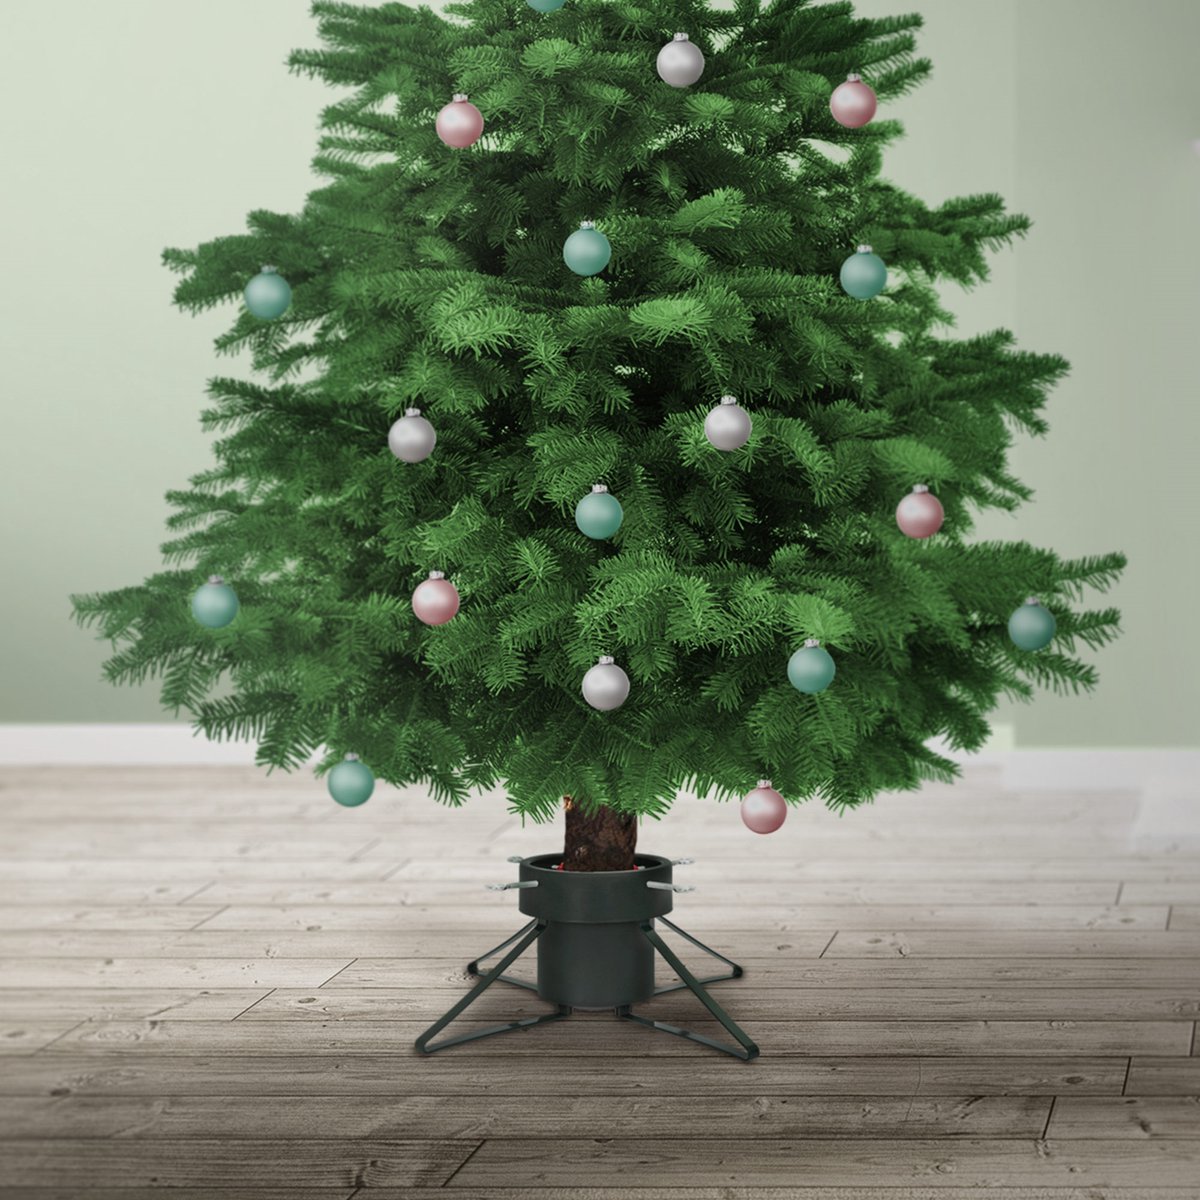 Nampook kerstboomstandaard - Medium - voor bomen tot 2 meter -1.8L  waterreservoir - Groen | bol.com